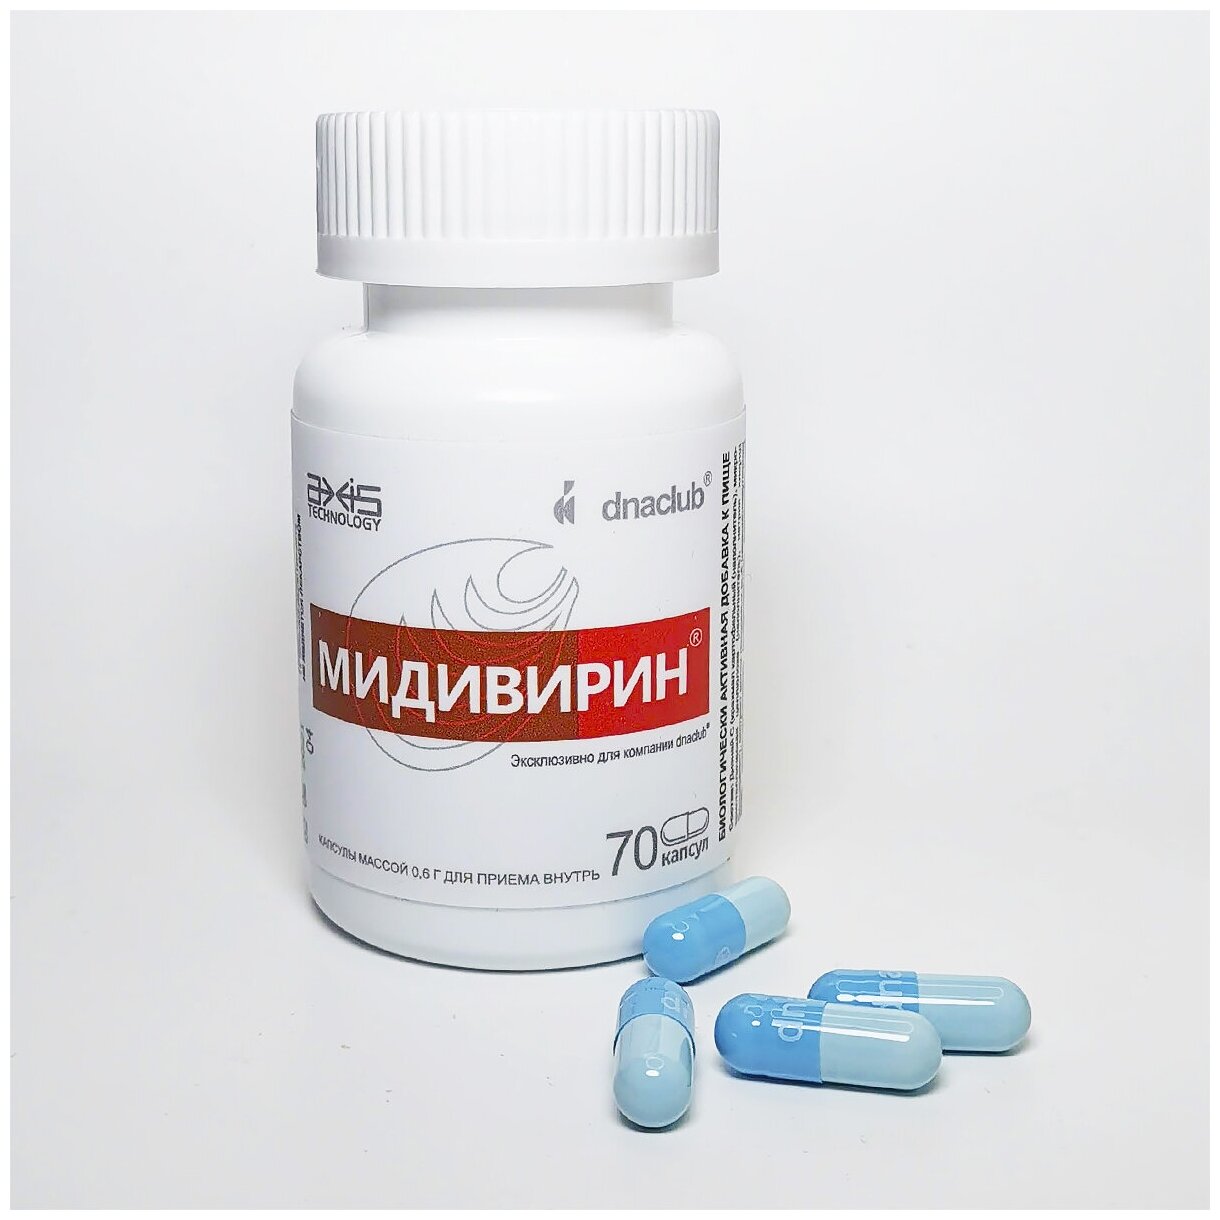 Мидивирин 70 капсул Диэнай (dnaclub) БАД / парафармацевтик / таурин / БАД для печени и иммунитета общеукрепляющий